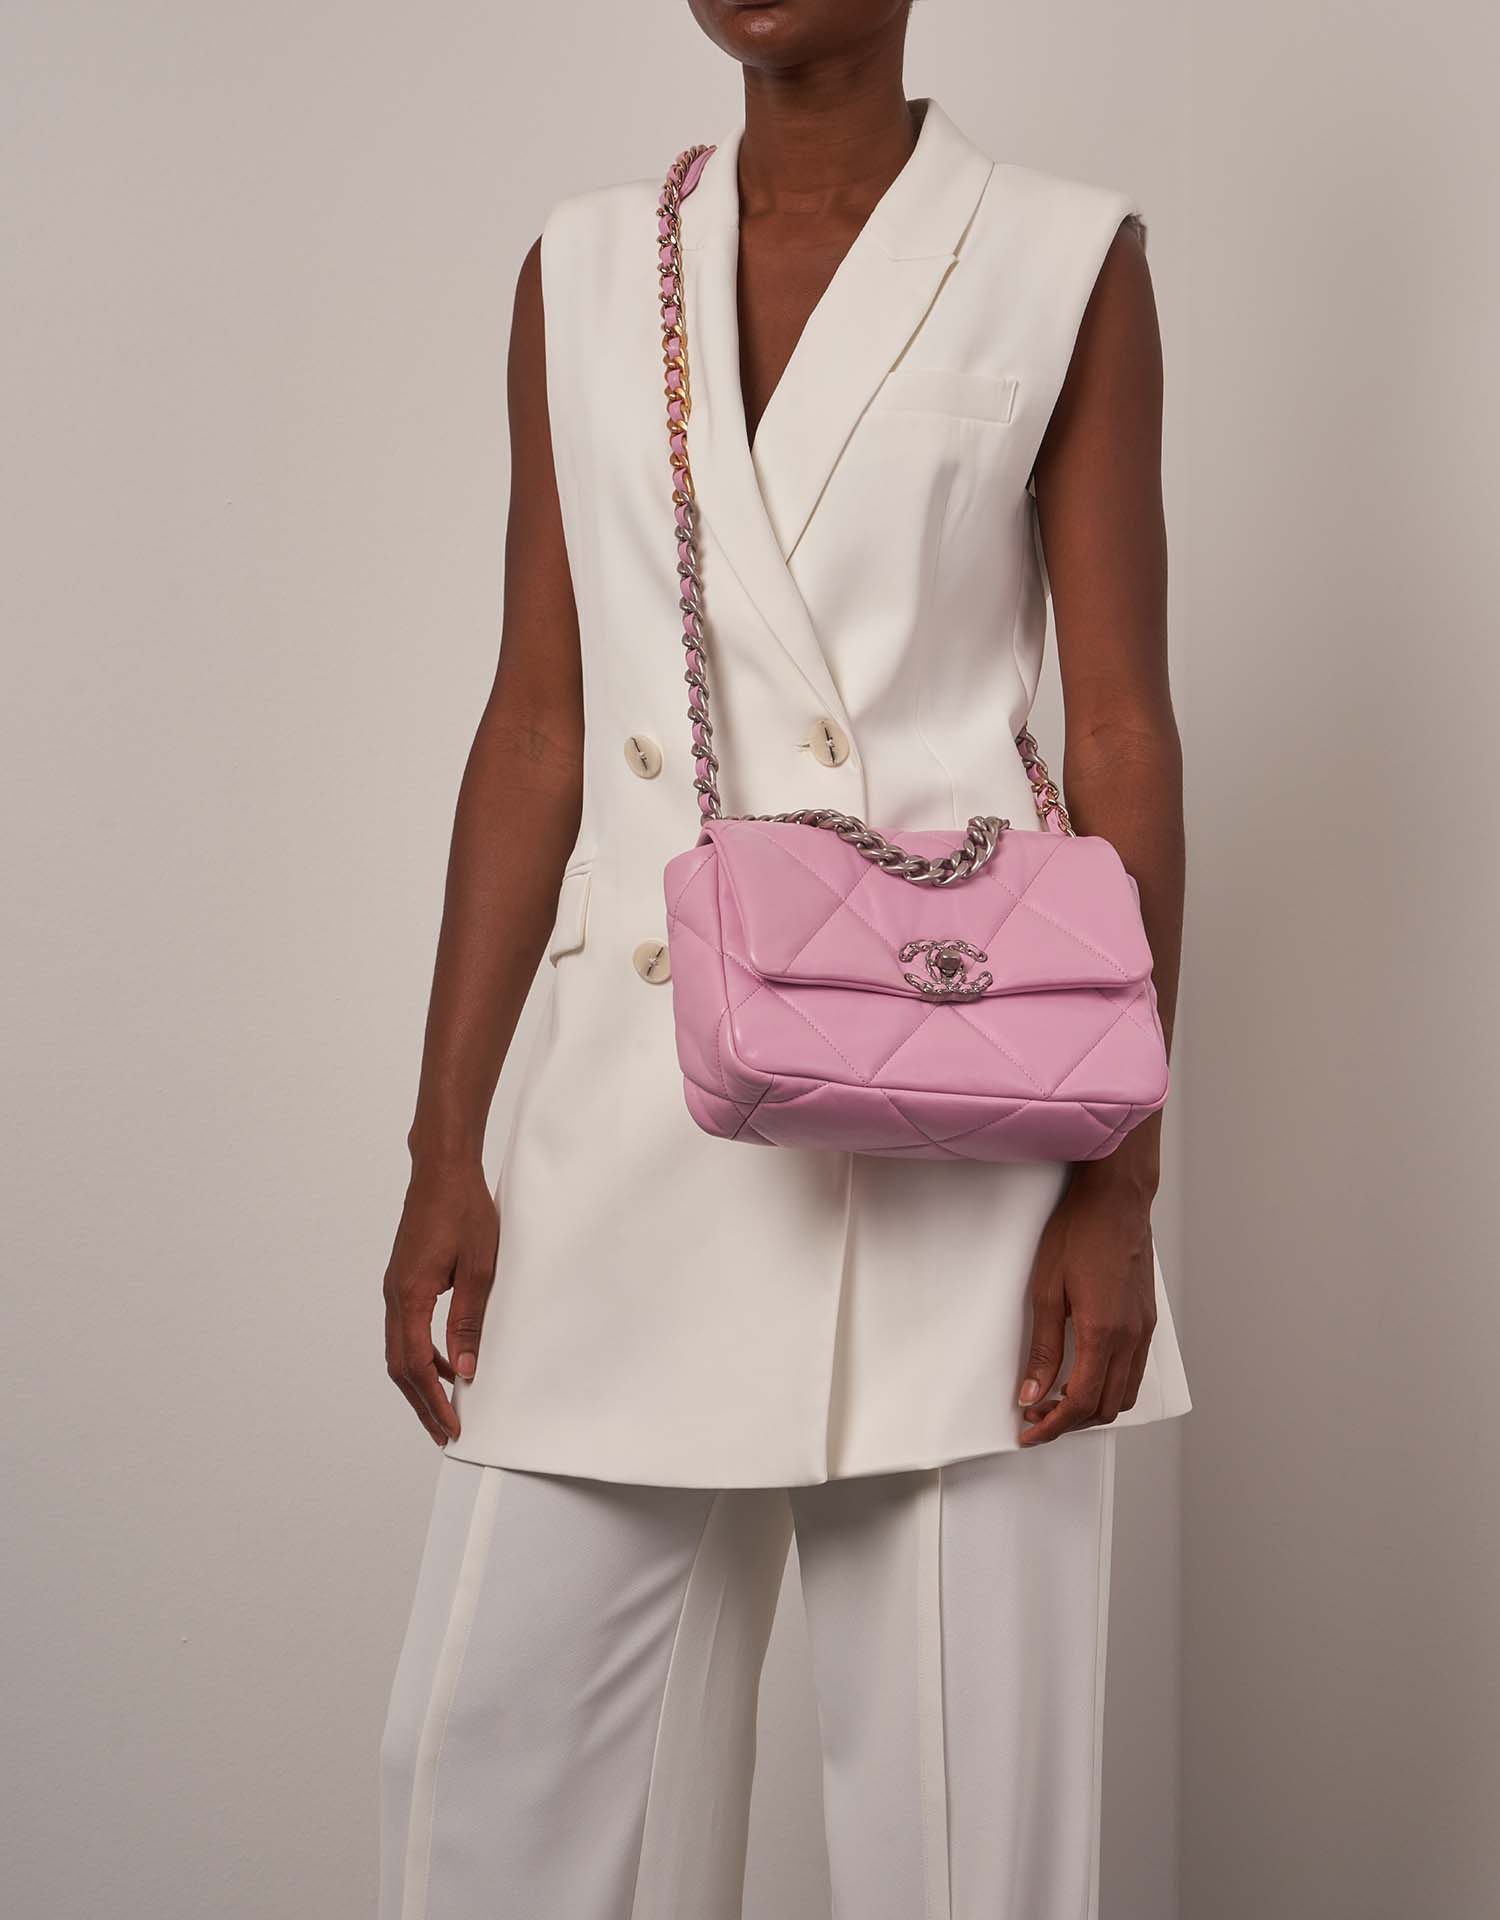 Chanel 19 Flapbag Pink on Model | Sell your designer bag on Saclab.com